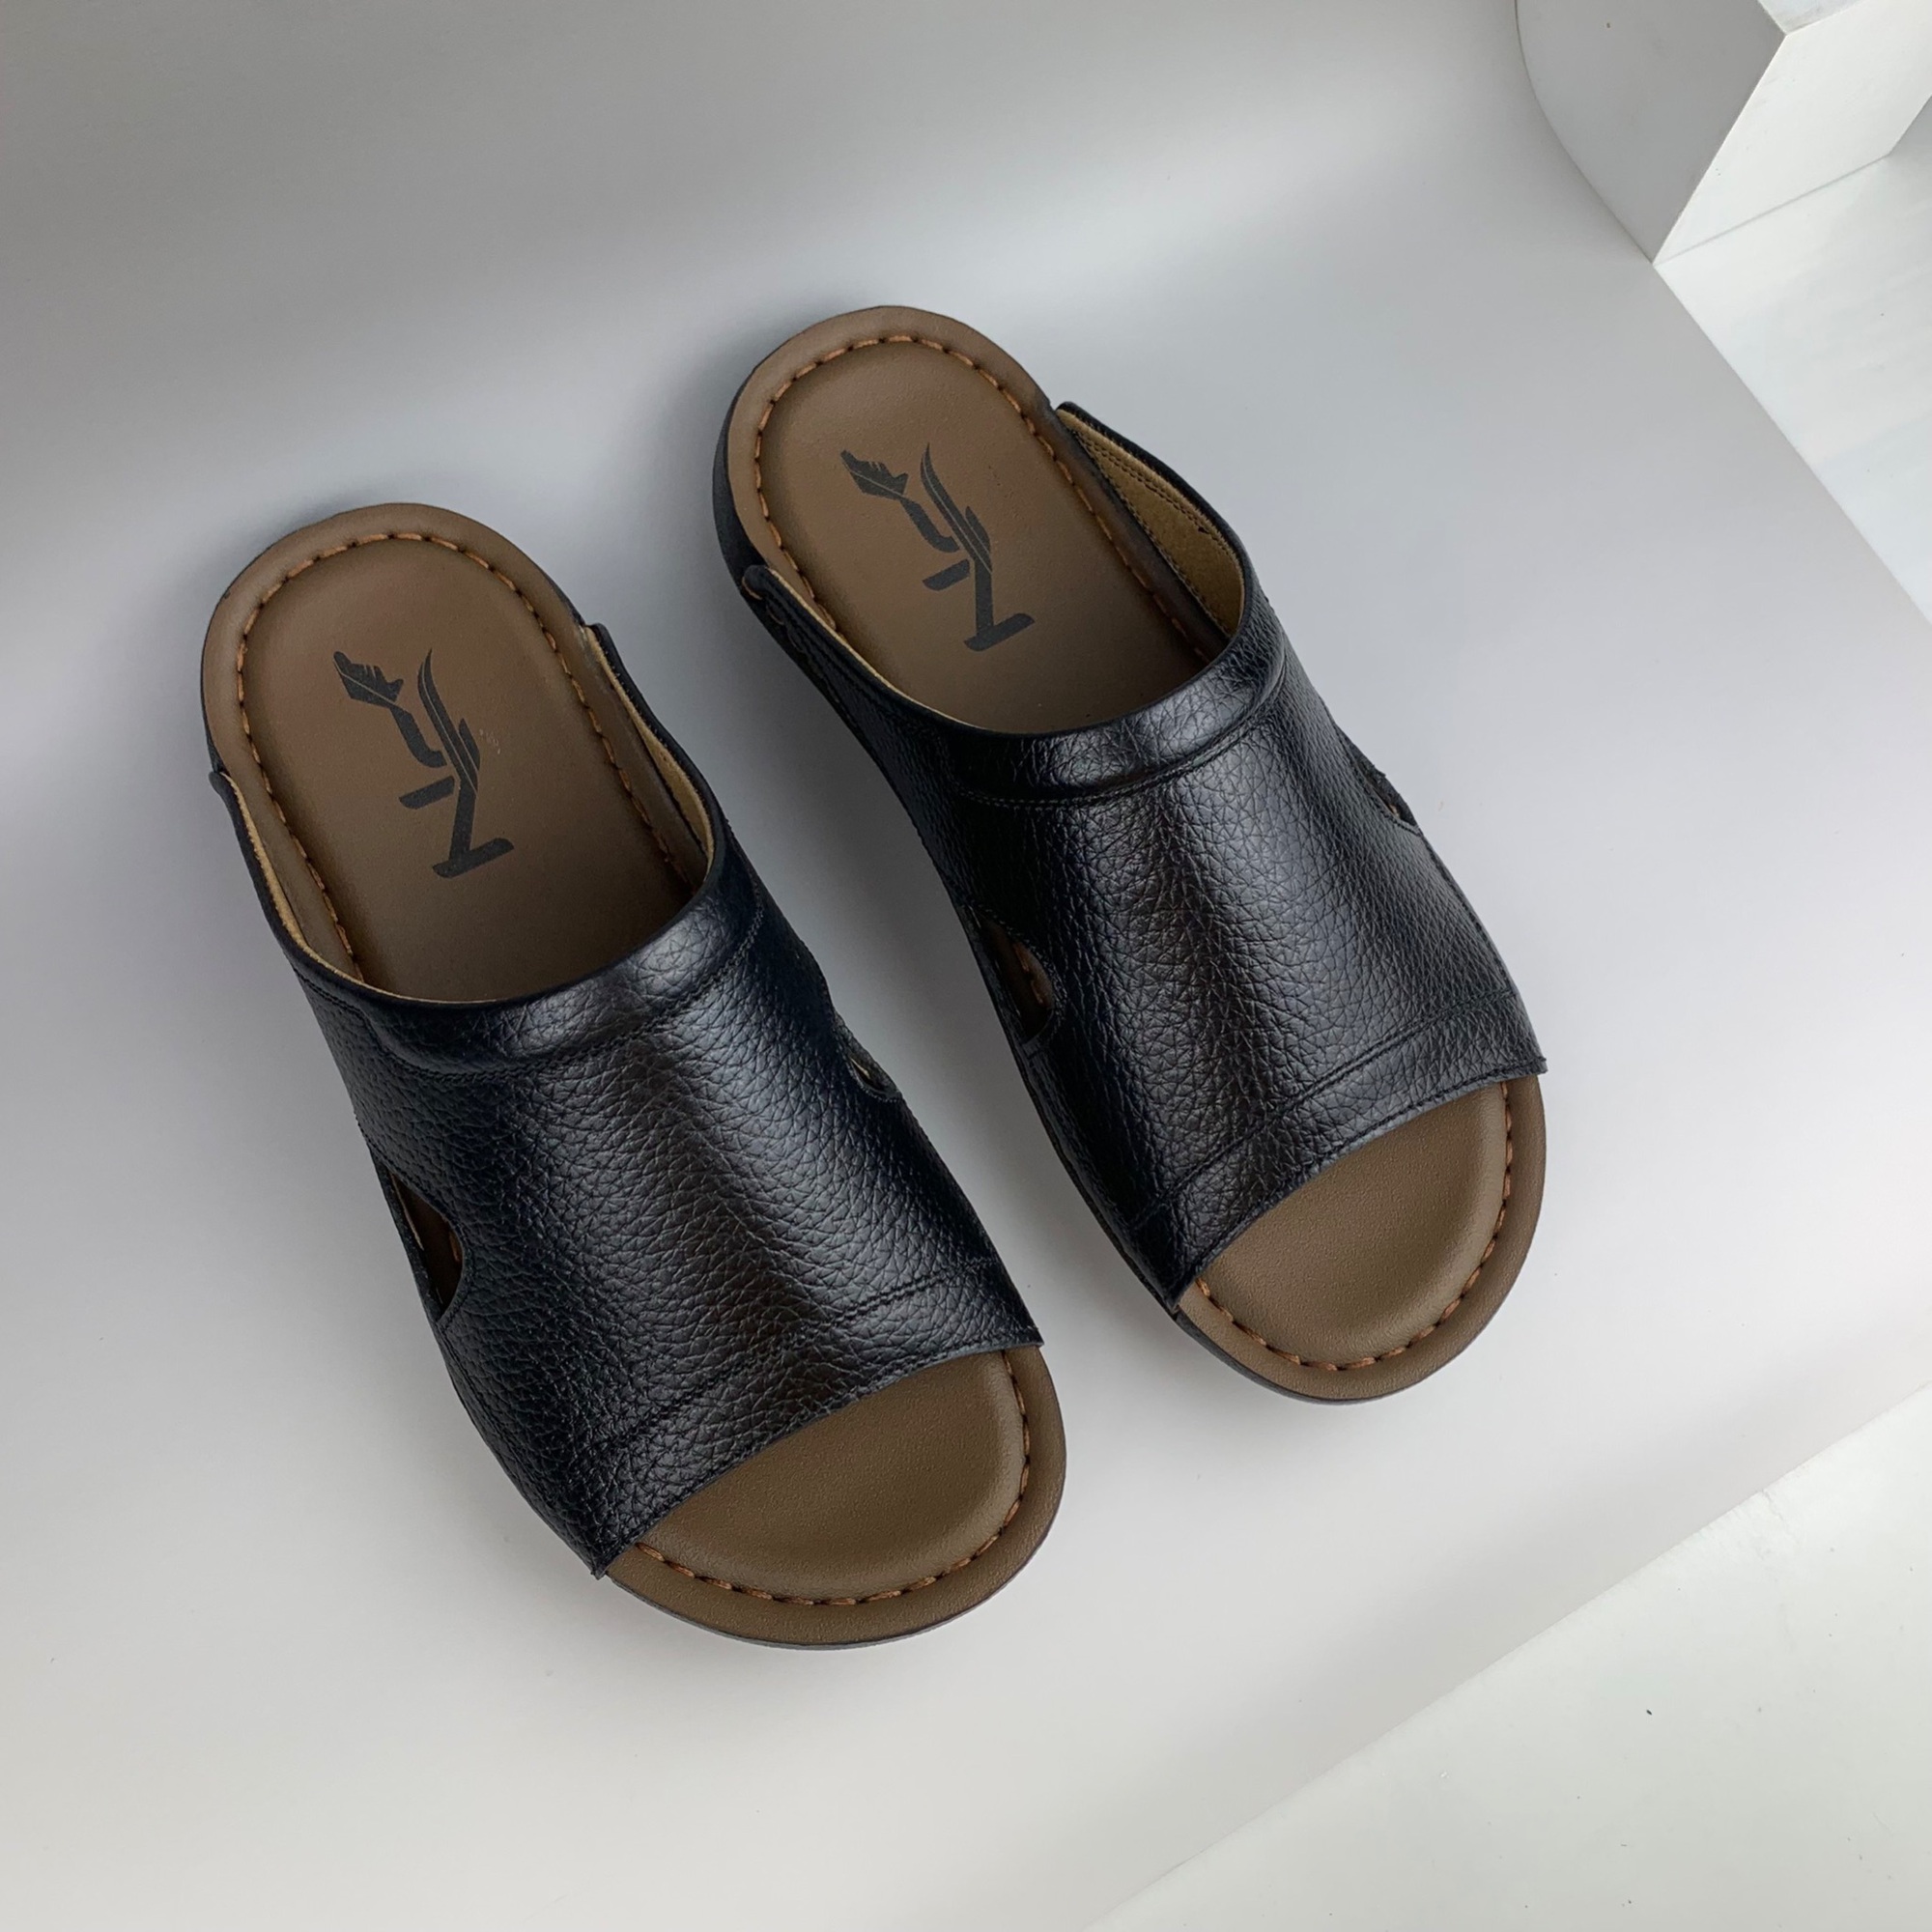 Giày da PN nỗ lực đem đến sản phẩm đồ da chất lượng cho khách hàng - Ảnh 3.